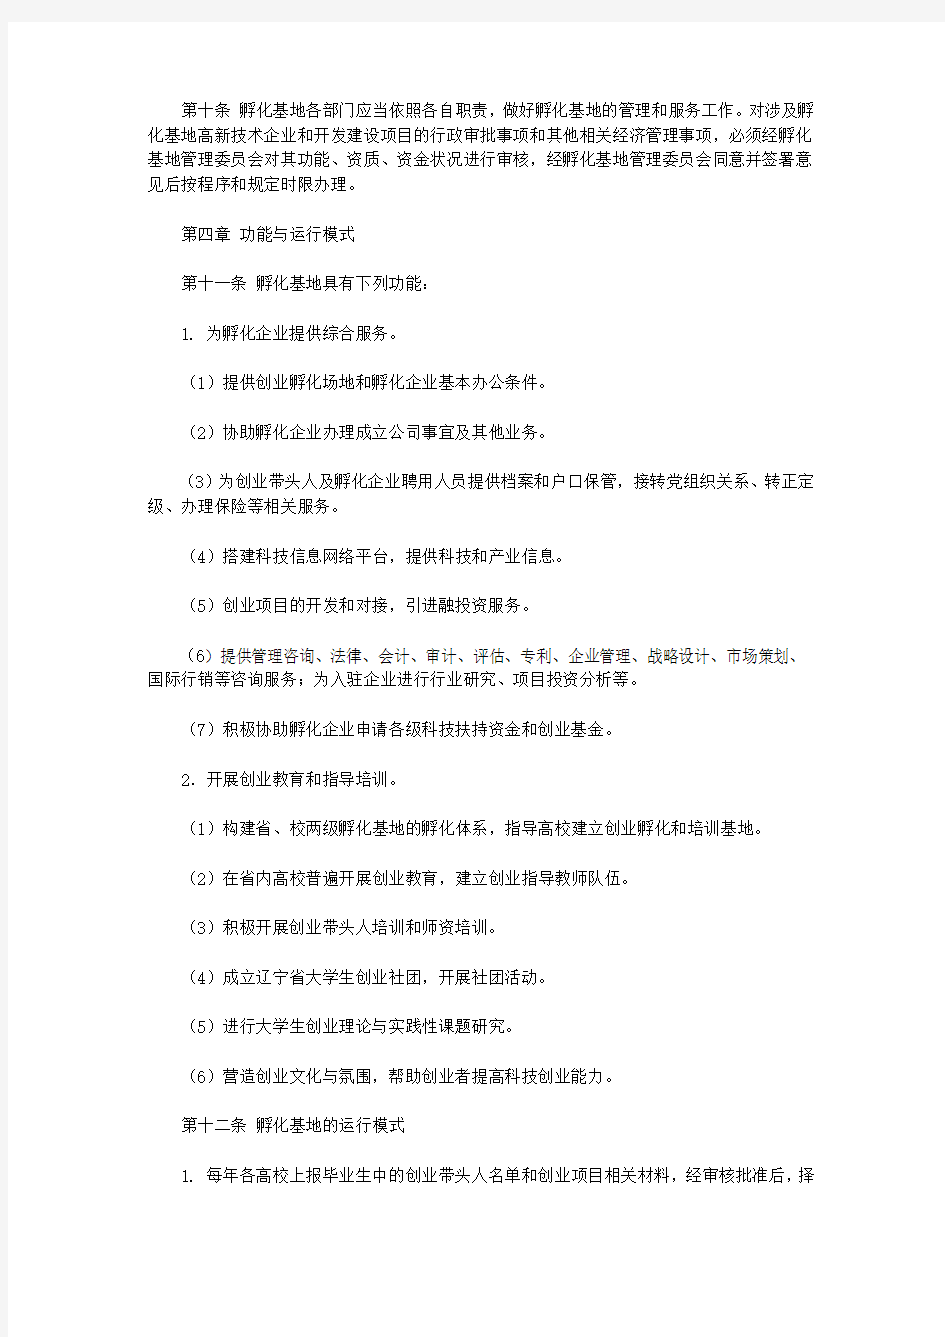 辽宁省大学生创业孵化基地管理办法(暂行)